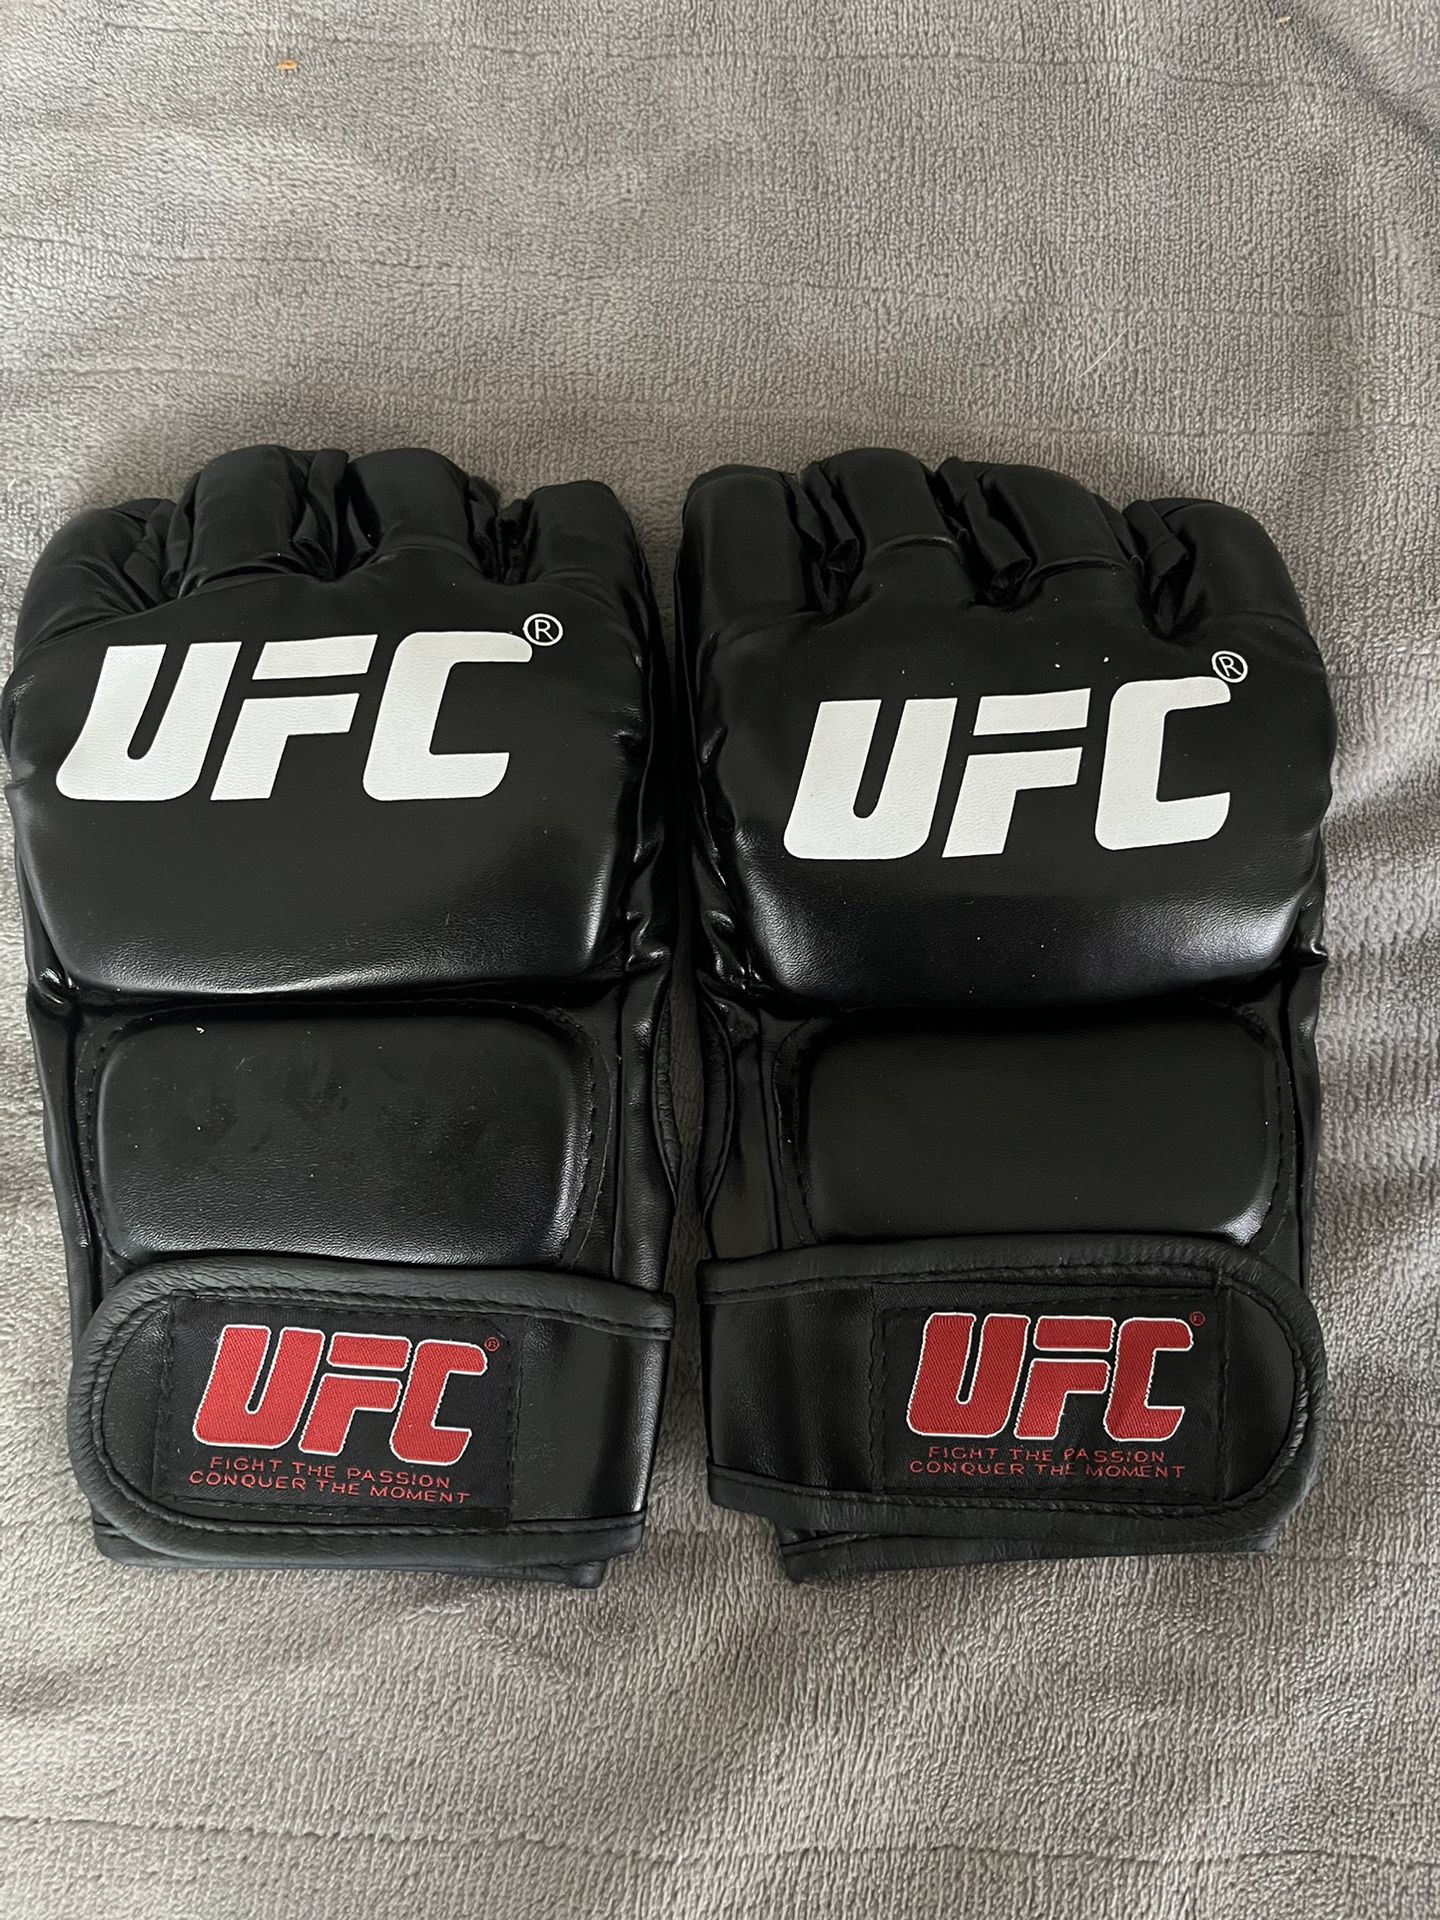 UFC MMA Gloves Pair 